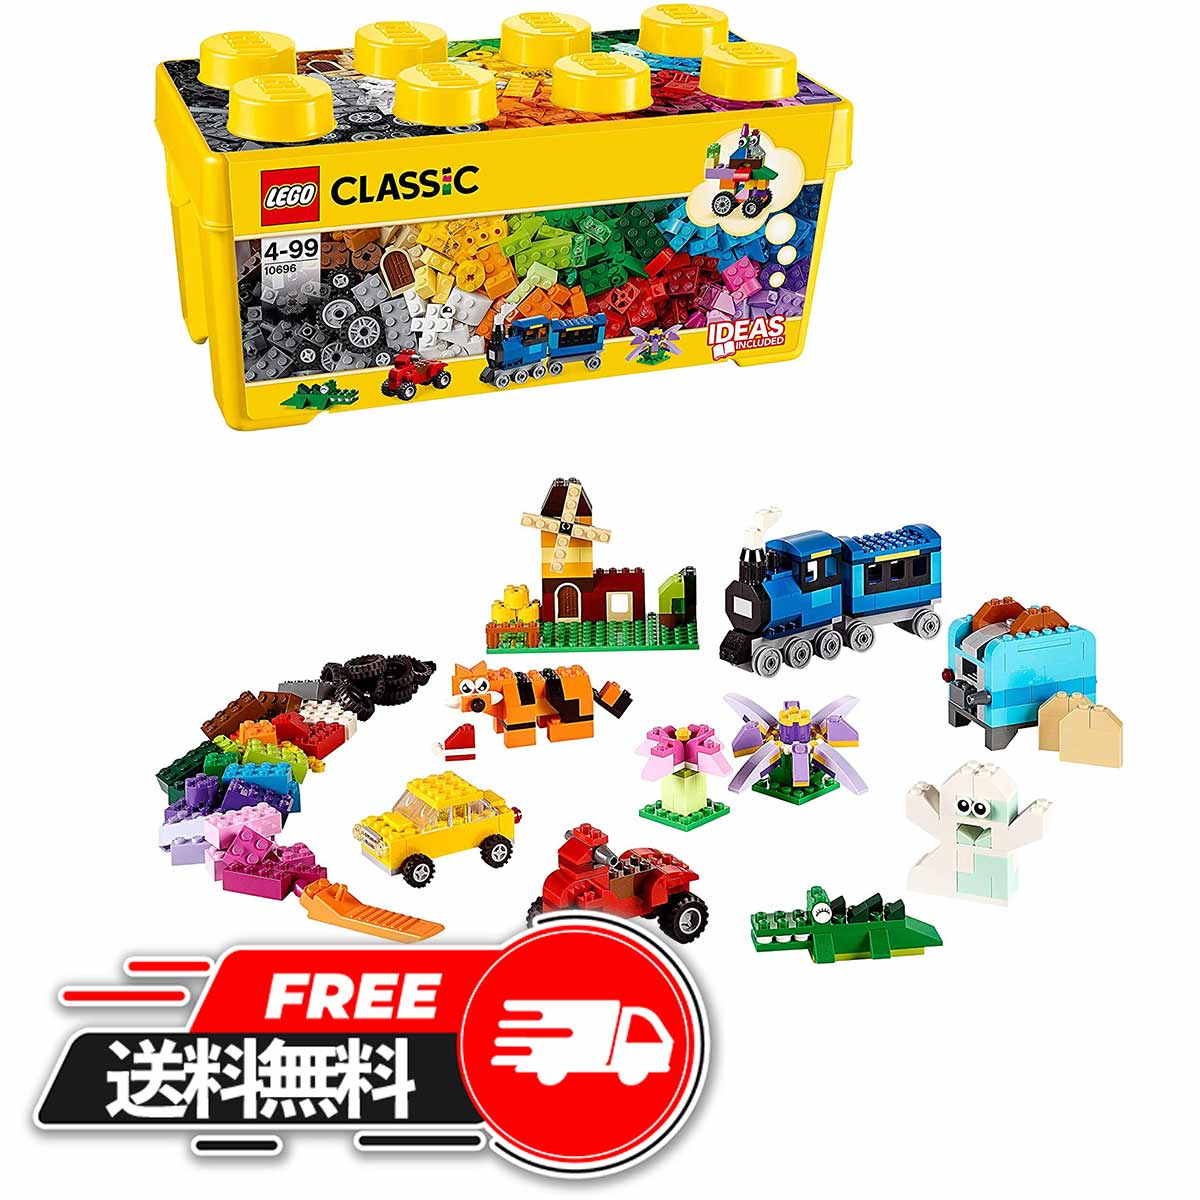 【 父の日 ギフト 】 レゴ クラシック 黄色のアイデアボックス プラス 10696/(LEGO) 10696 35色のブロックセット 4歳以上の全ての男の子女の子におすすめ